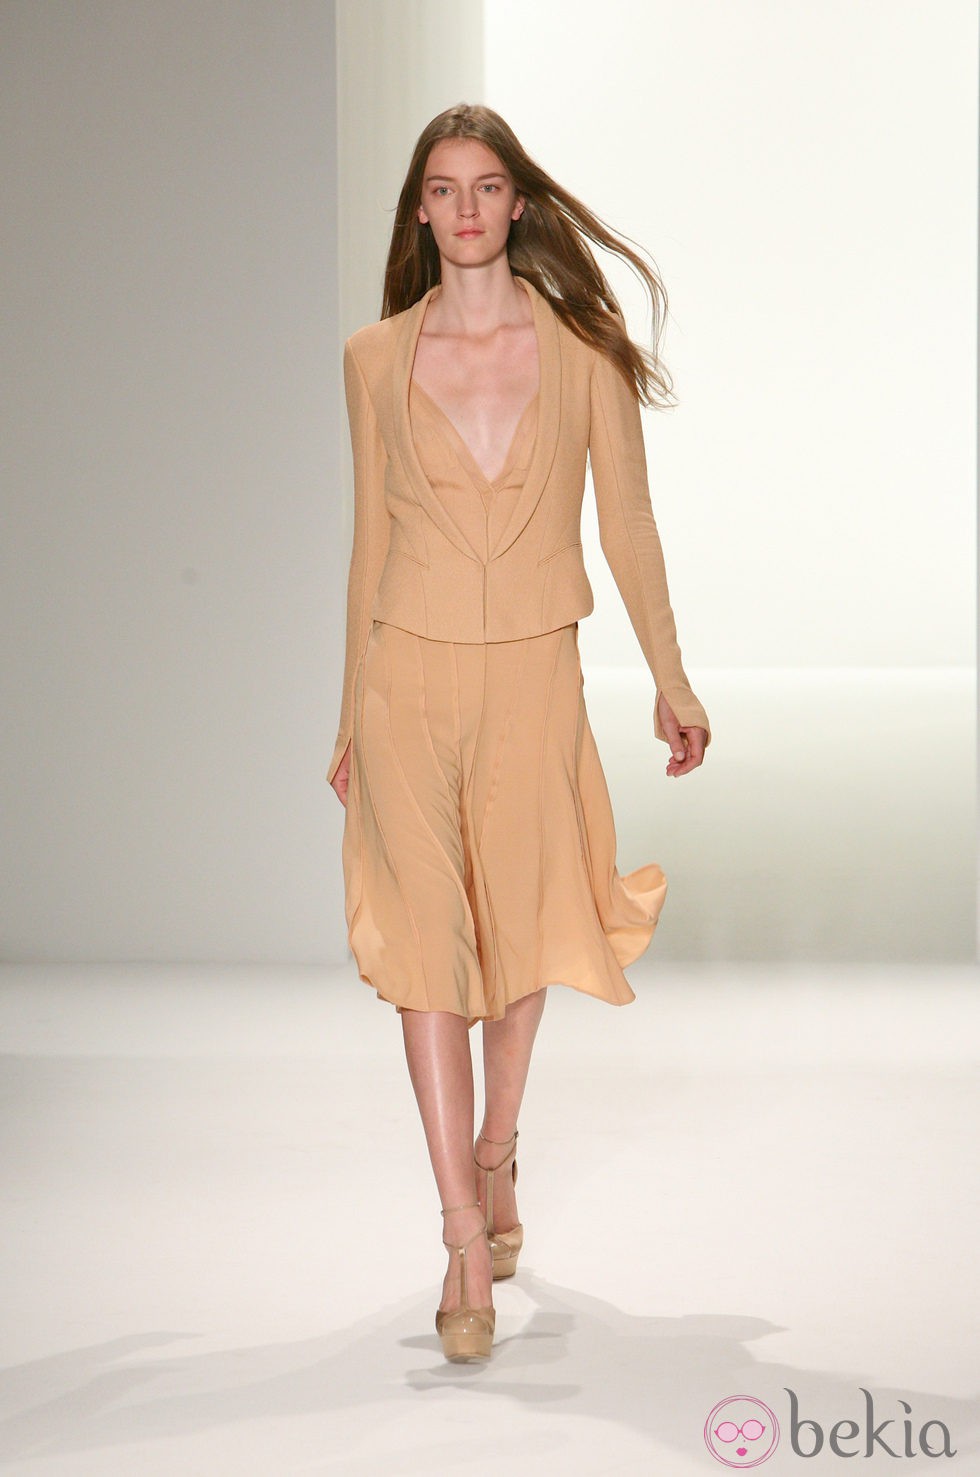 Traje de chaqueta en tono arena de Calvin Klein, colección primavera de 2012